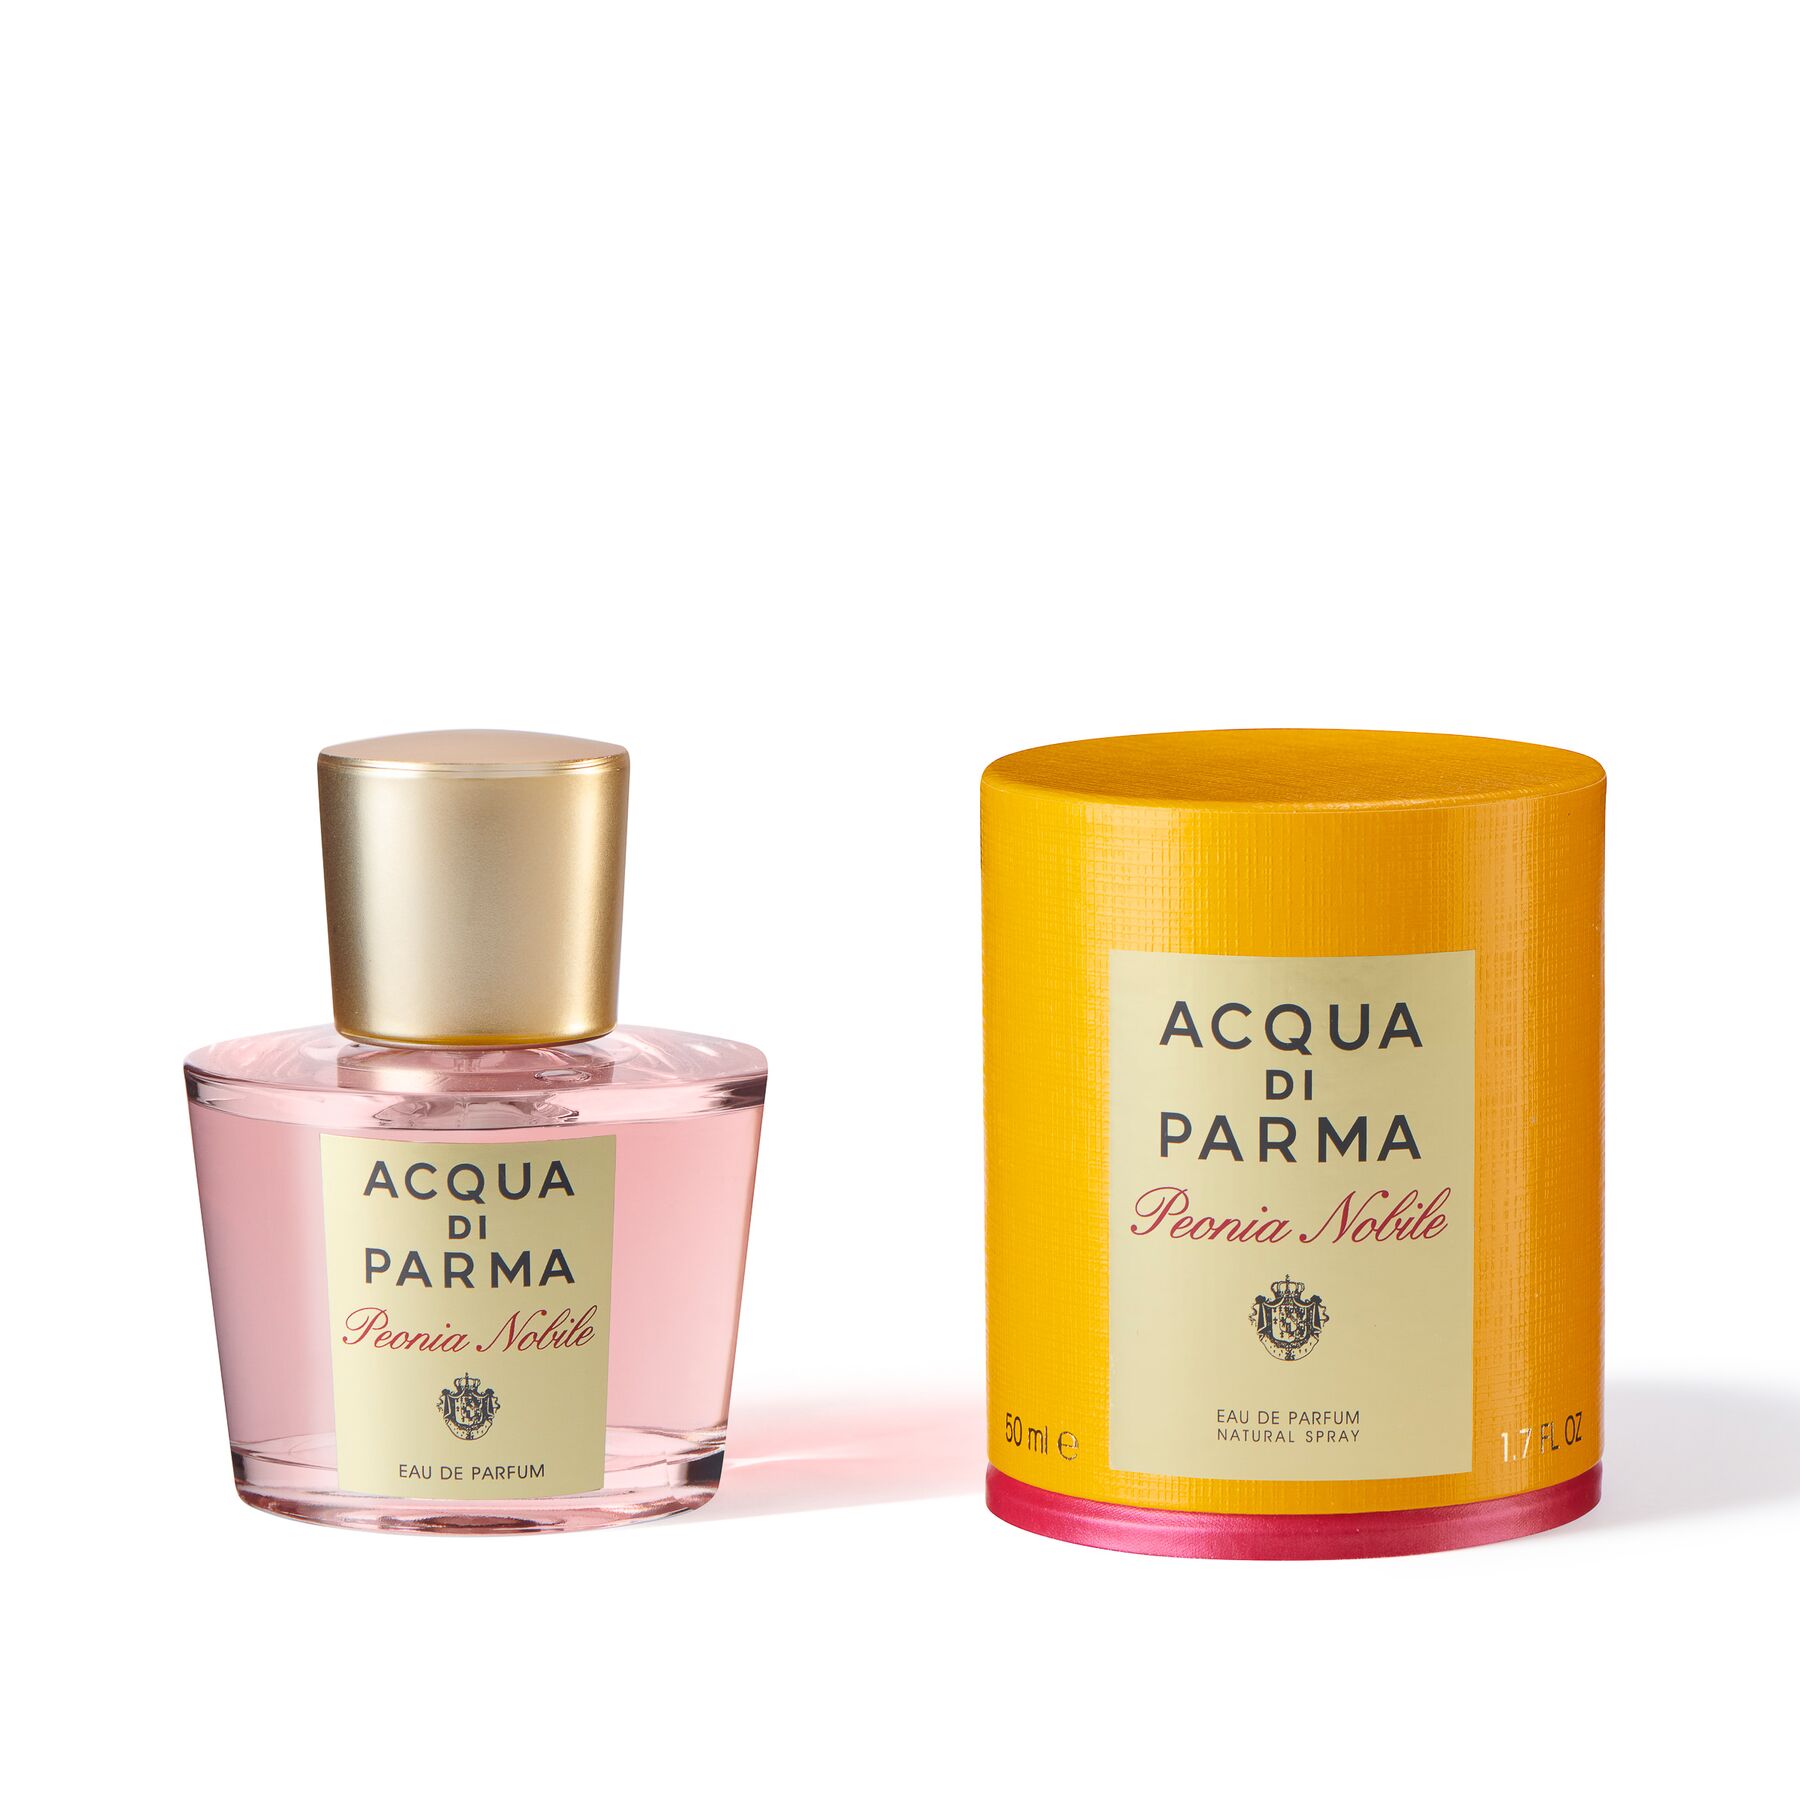 ぺオニア ノービレ オーデパルファム - アクアディパルマ公式 ACQUA DI PARMA フレグランス 香水 デュフューザー